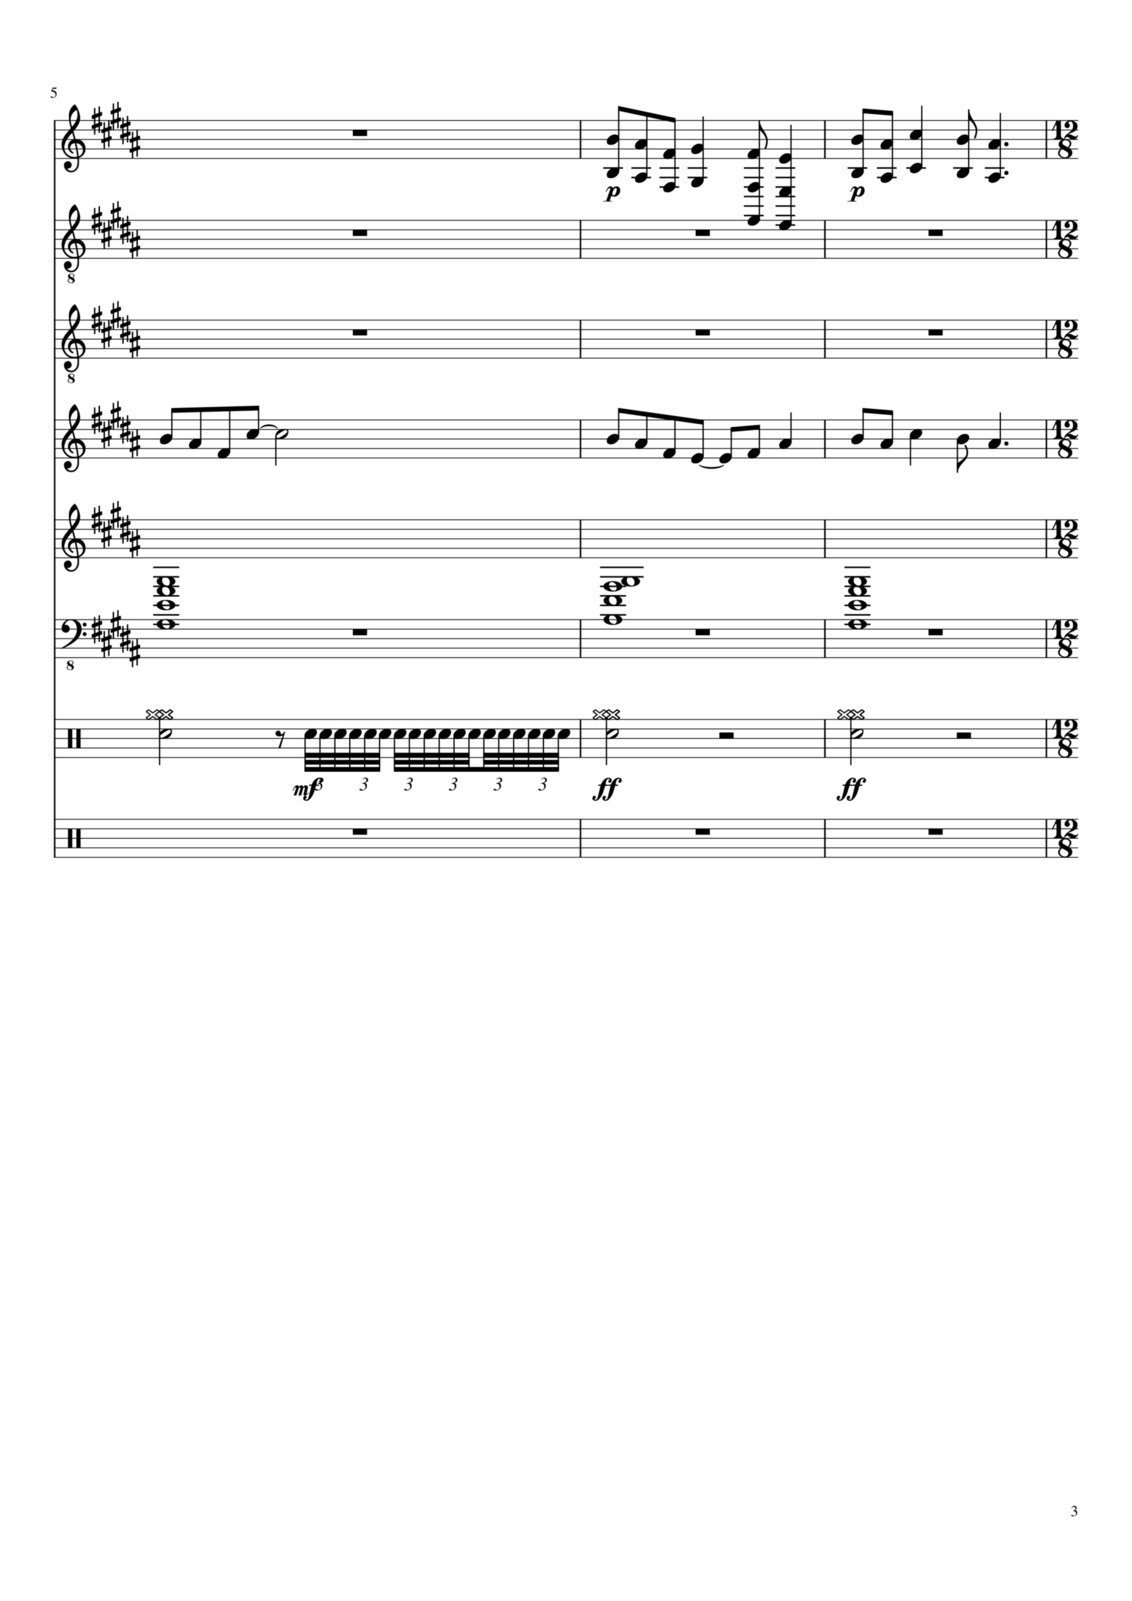 Zvezdnyiy vodoem slide, Image 9